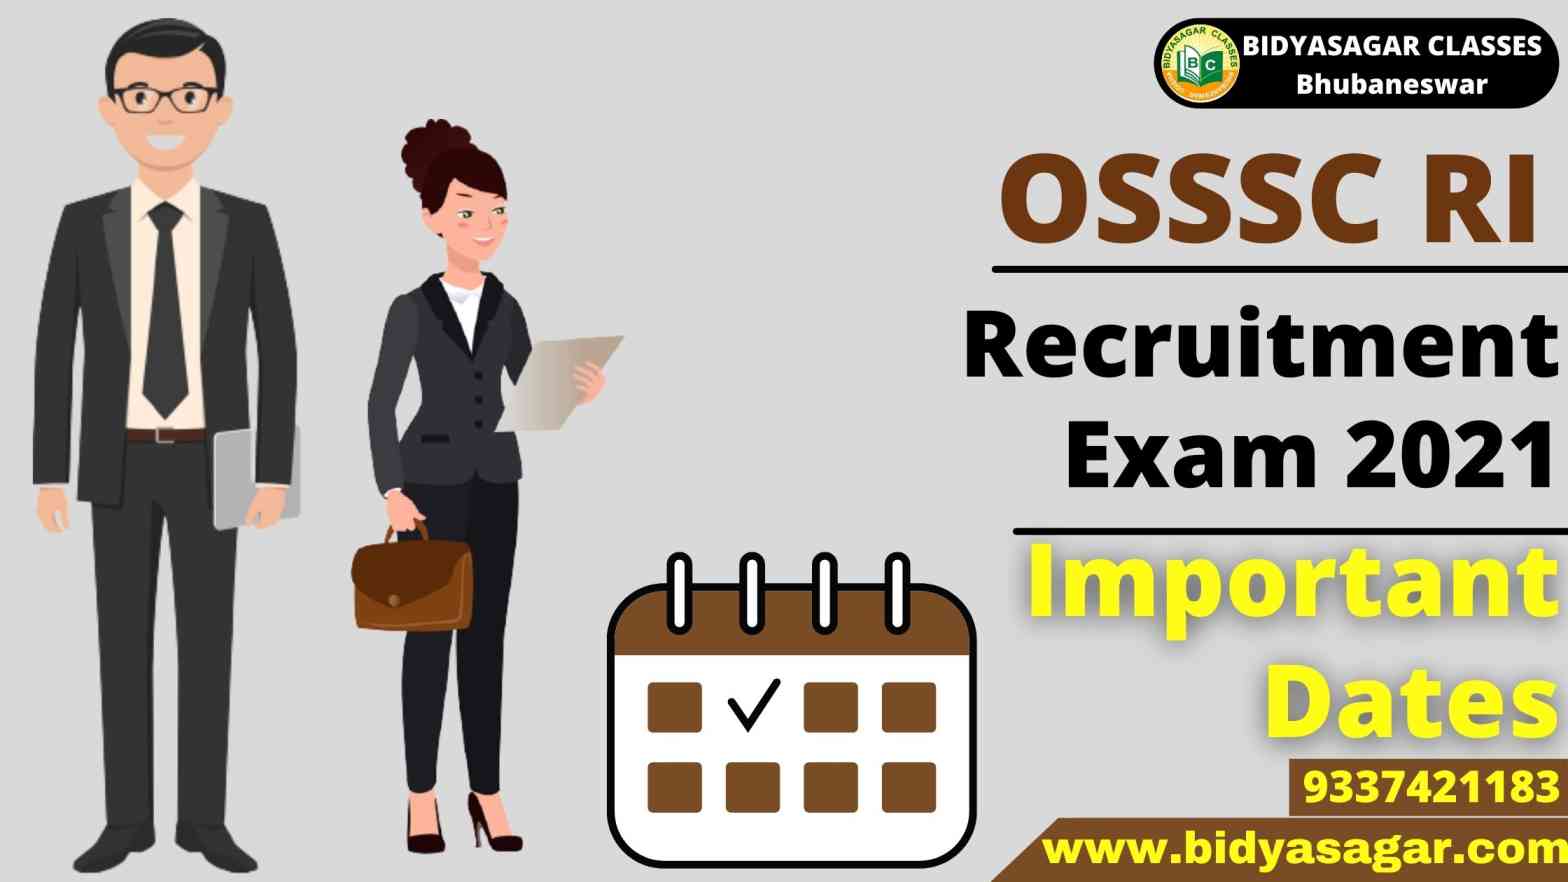 OSSSC RI Recruitment Exam 2021 Important Dates